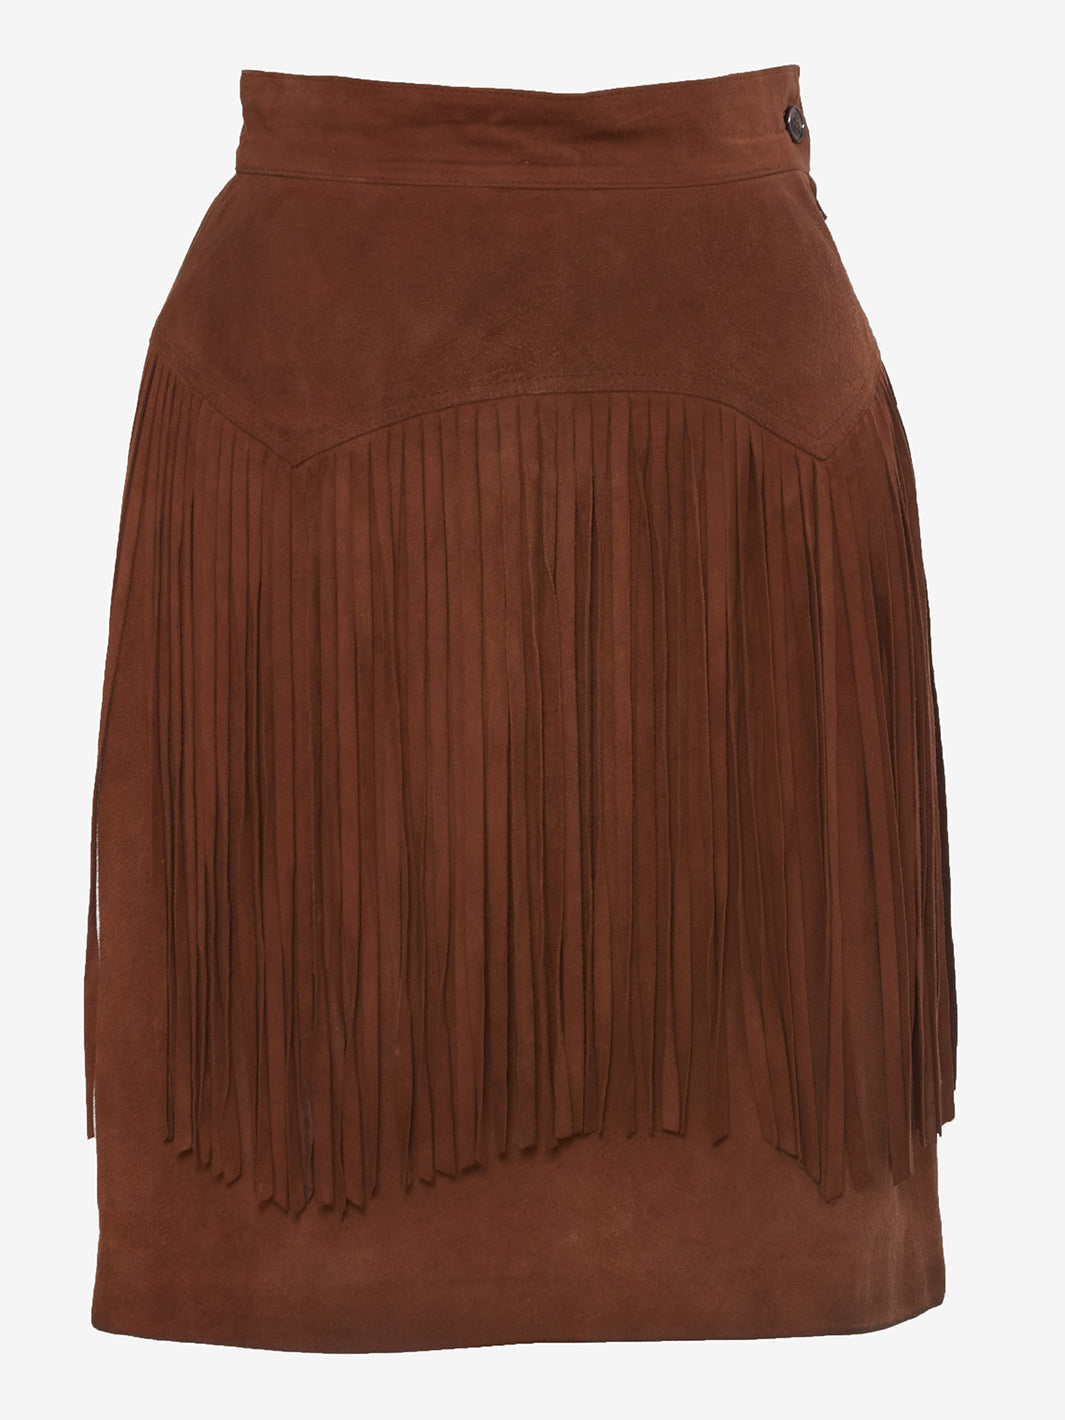 Vintage brown suede midi skirt with bangs